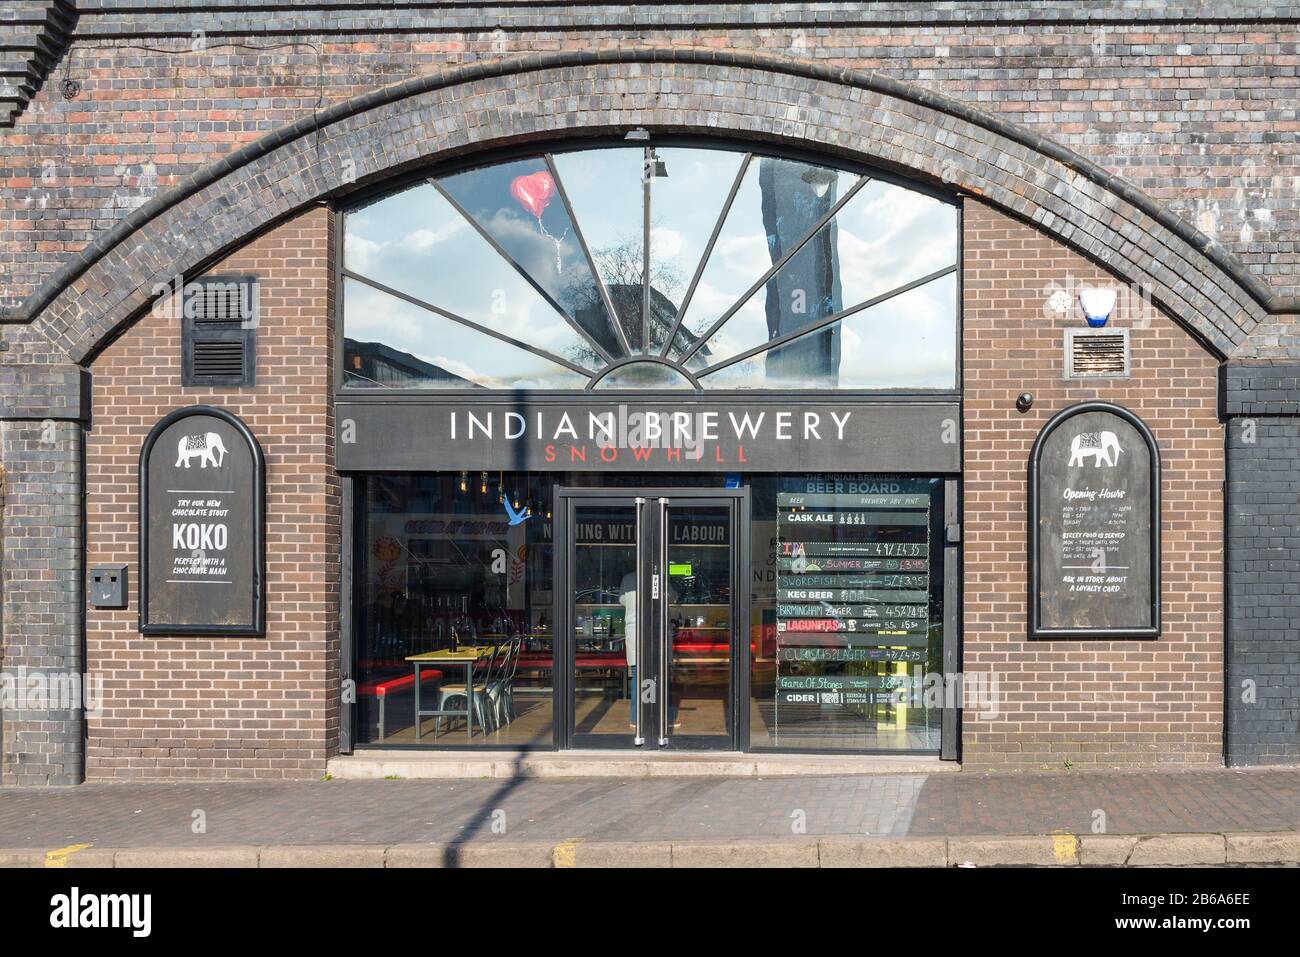 Die Indian Brewery in Eisenbahnbögen an der Livery Street im Stadtzentrum von Birmingham, Großbritannien, serviert indische Straßennahrung und handwerkliches Bier Stockfoto